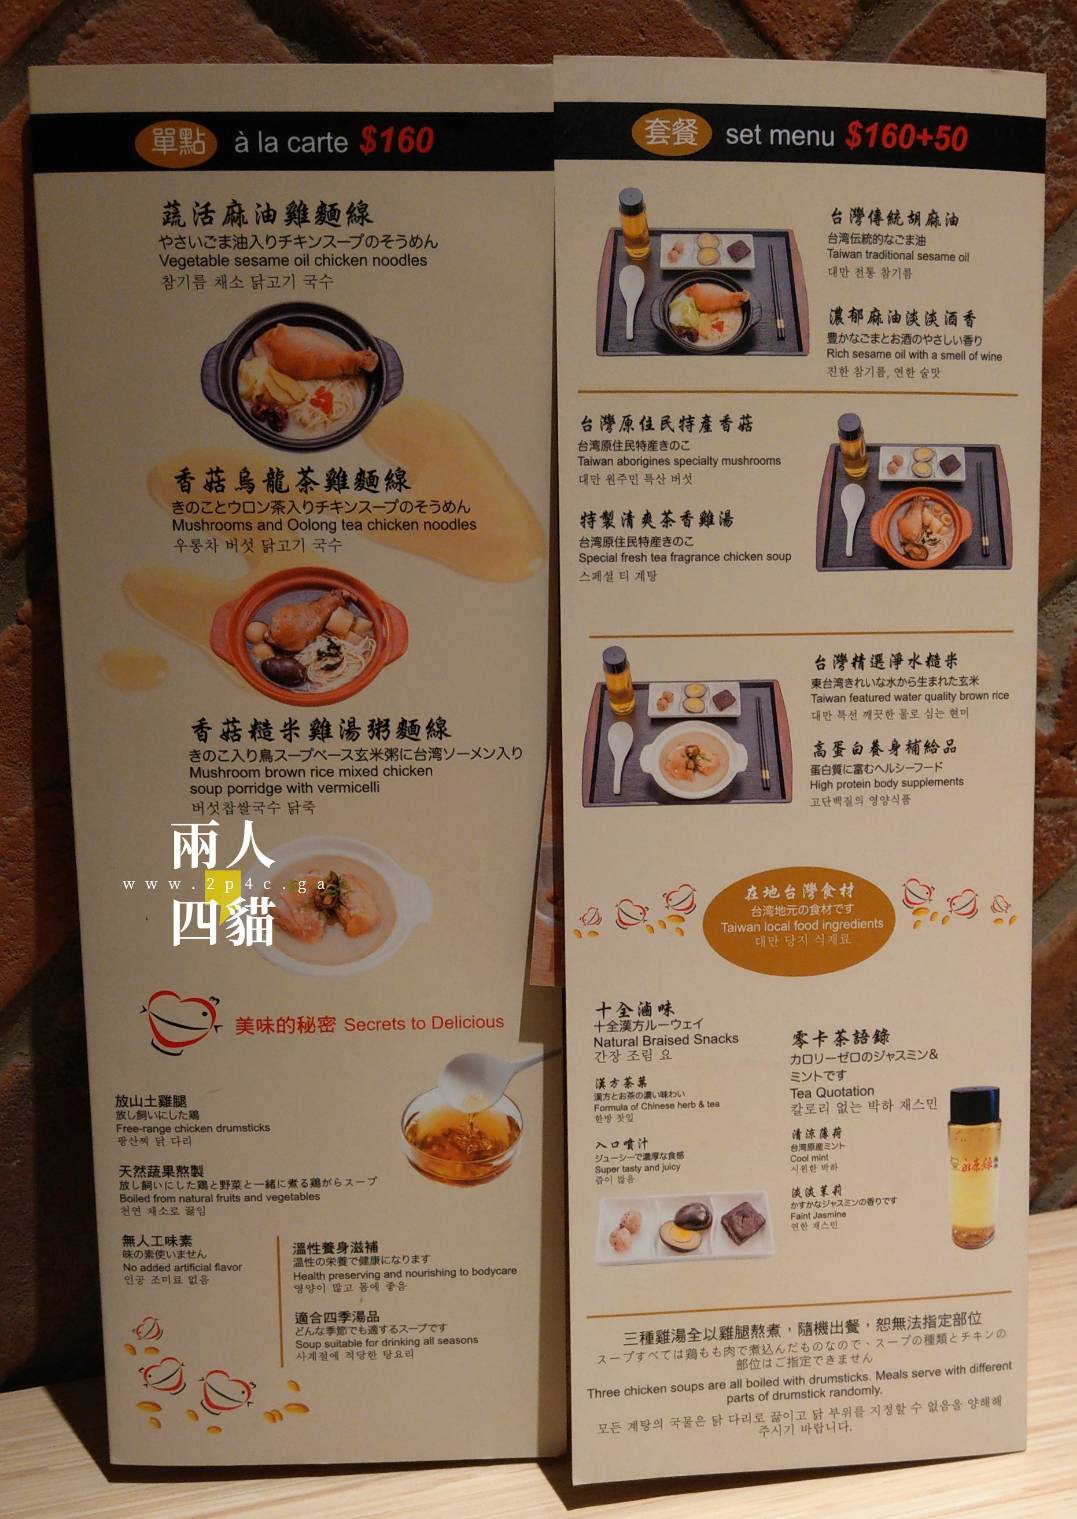 東門永康錄雞湯》台北市區竟然能喝到放山雞雞湯！永康商圈養生美食 傳統雞湯